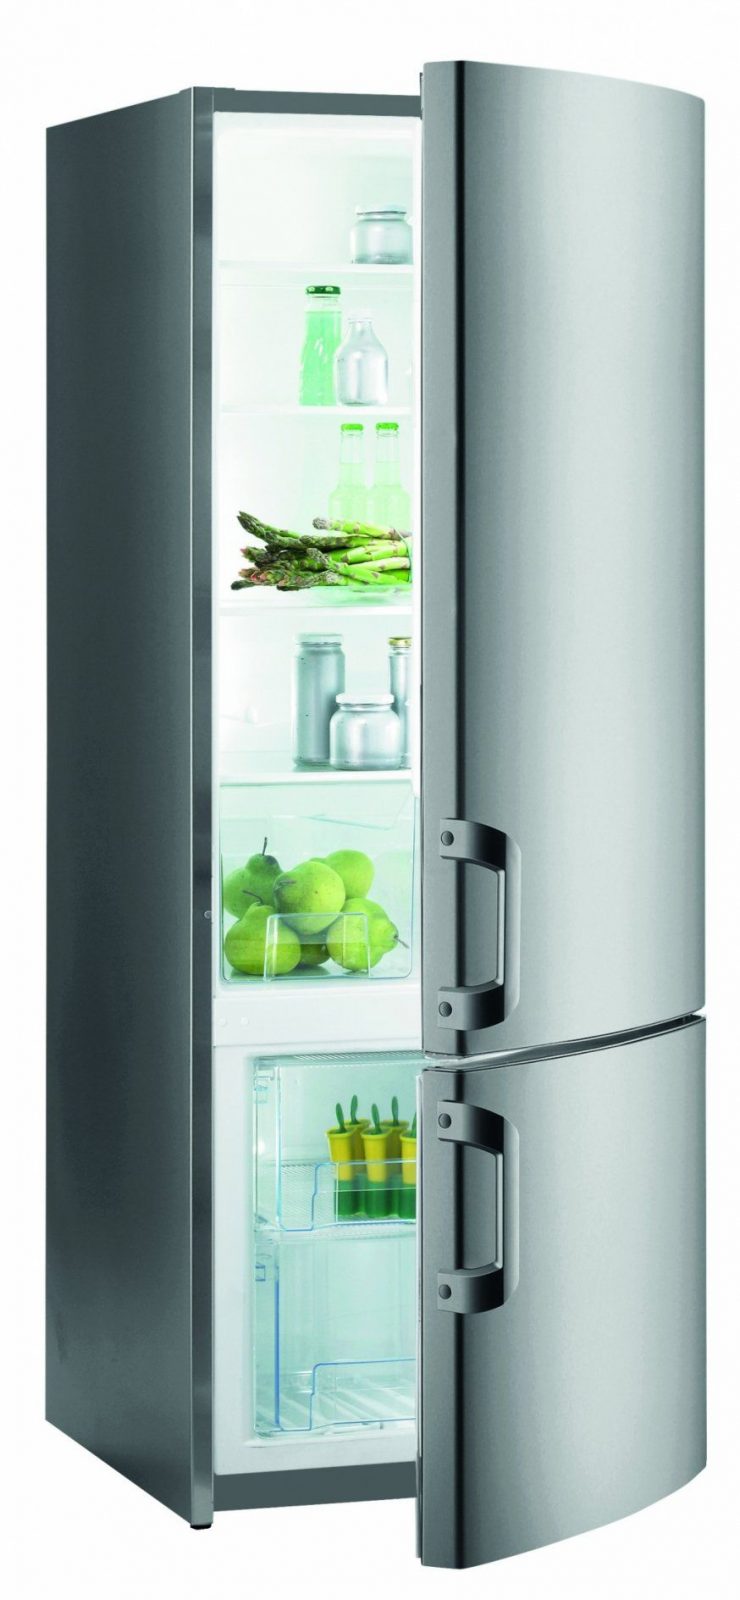 Luxus Kühlschrank 55 Cm Breit Stand Khlen Und Gefrieren Gorenje von Standkühlschrank 55 Cm Breit Bild